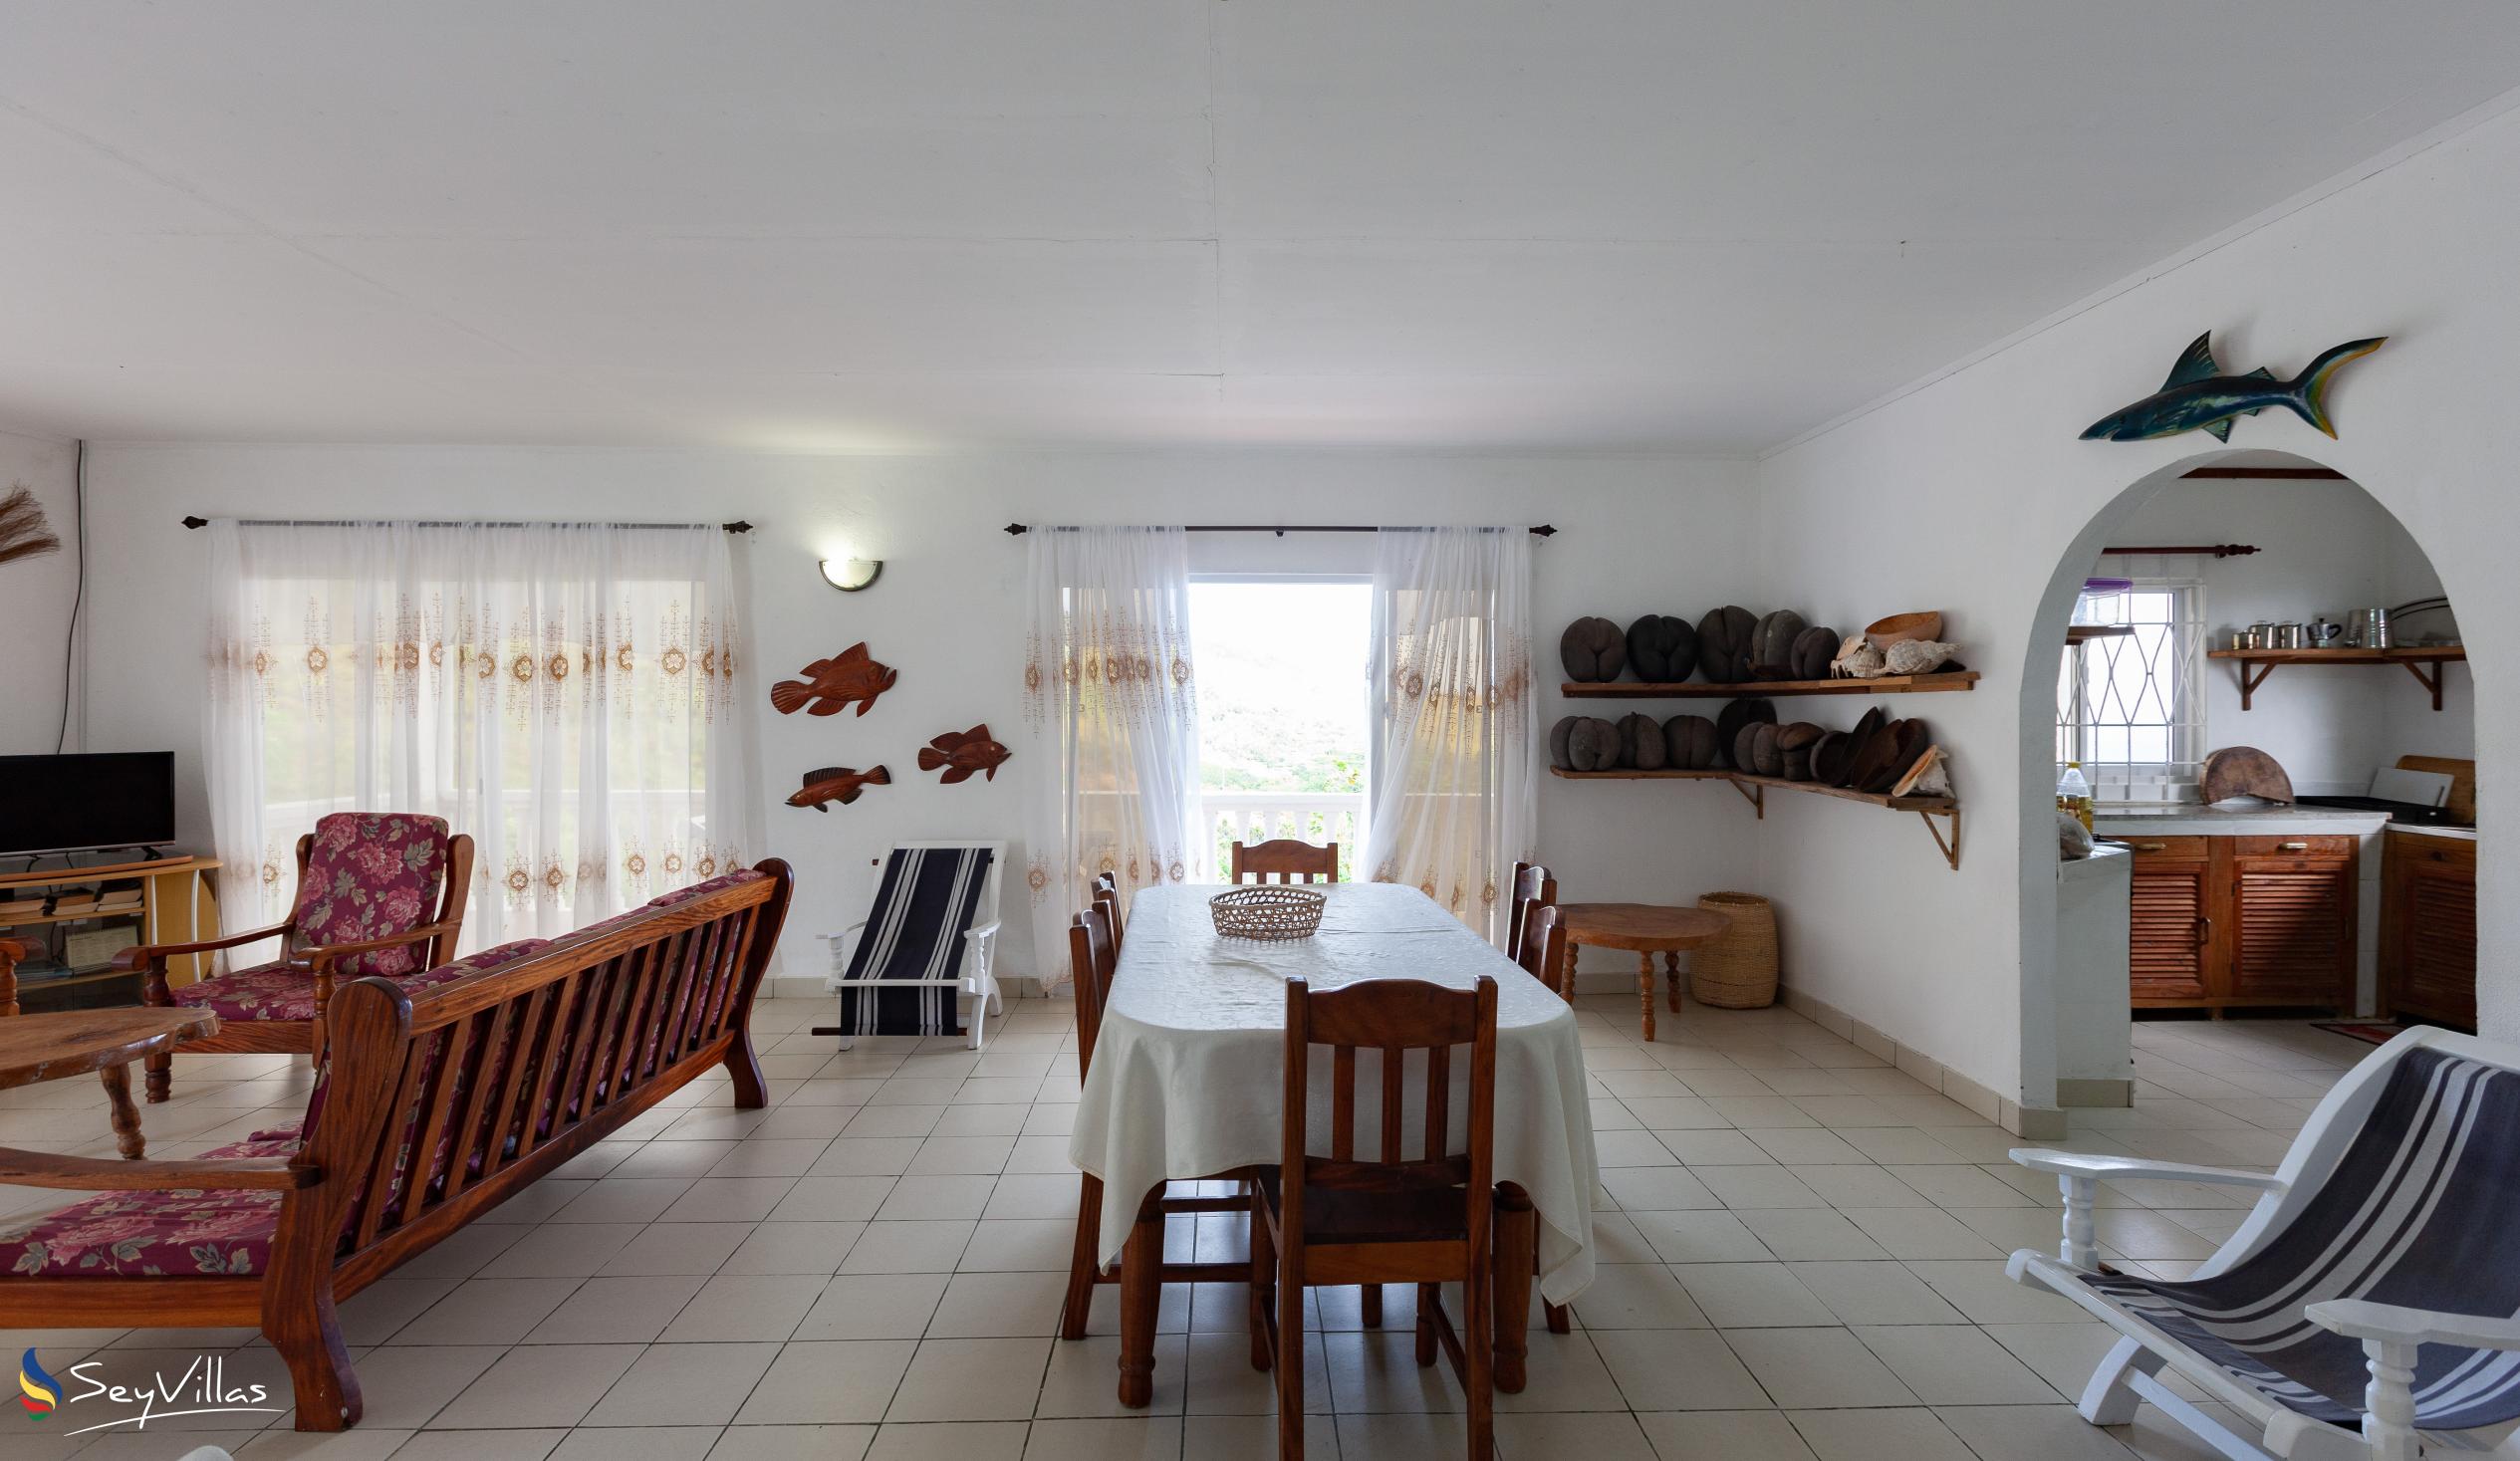 Foto 31: Maison du Soleil - Intérieur - Praslin (Seychelles)